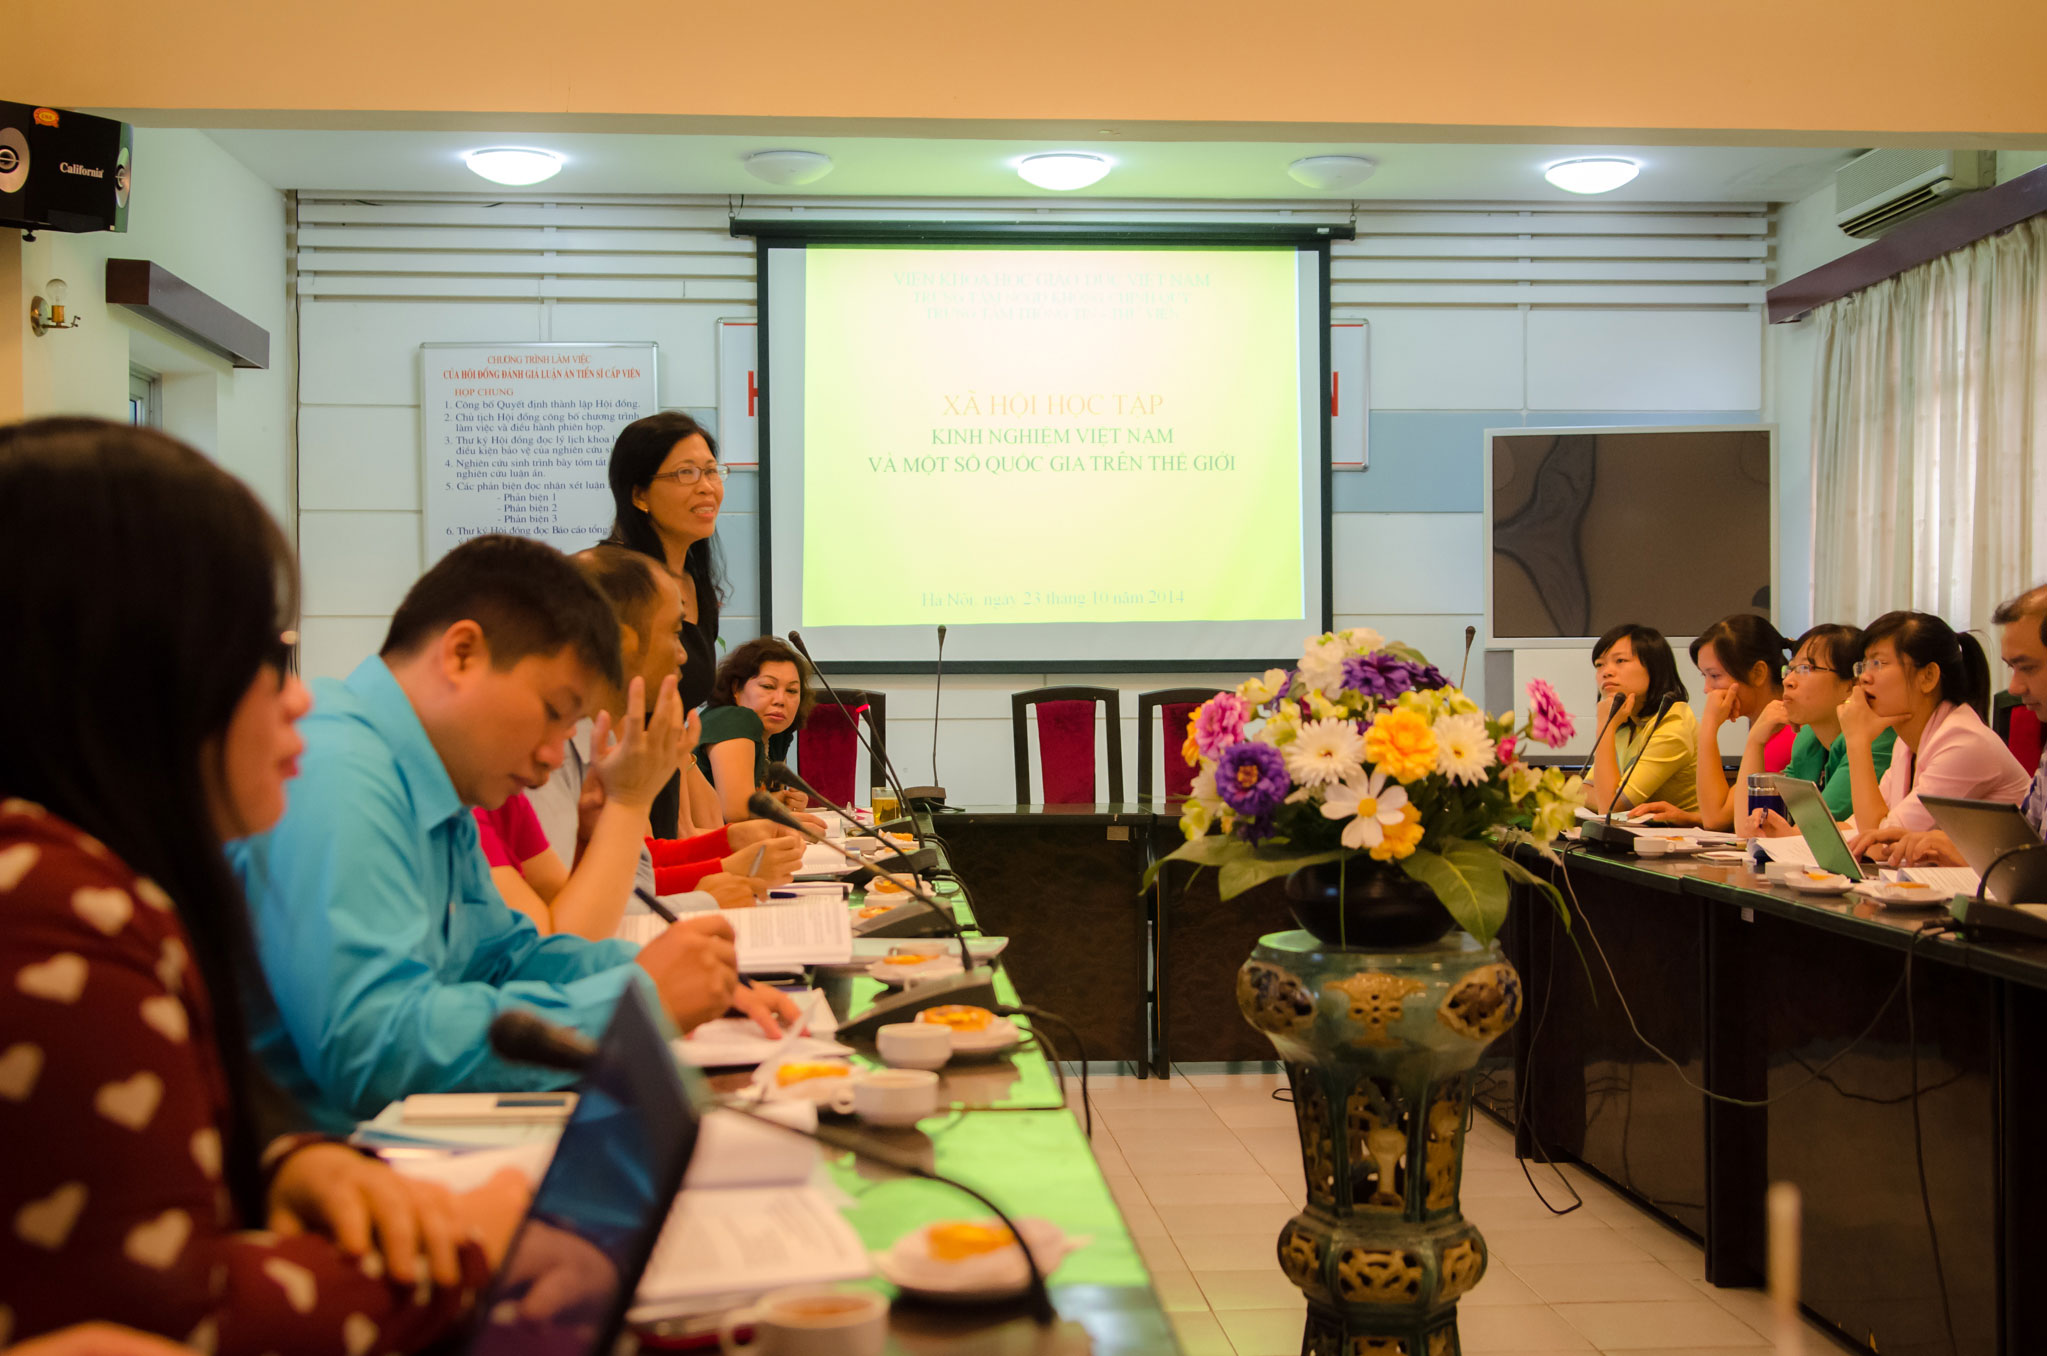 Hội thảo "Xã hội học tập: Kinh nghiệm Việt Nam và một số nước trên thế giới"